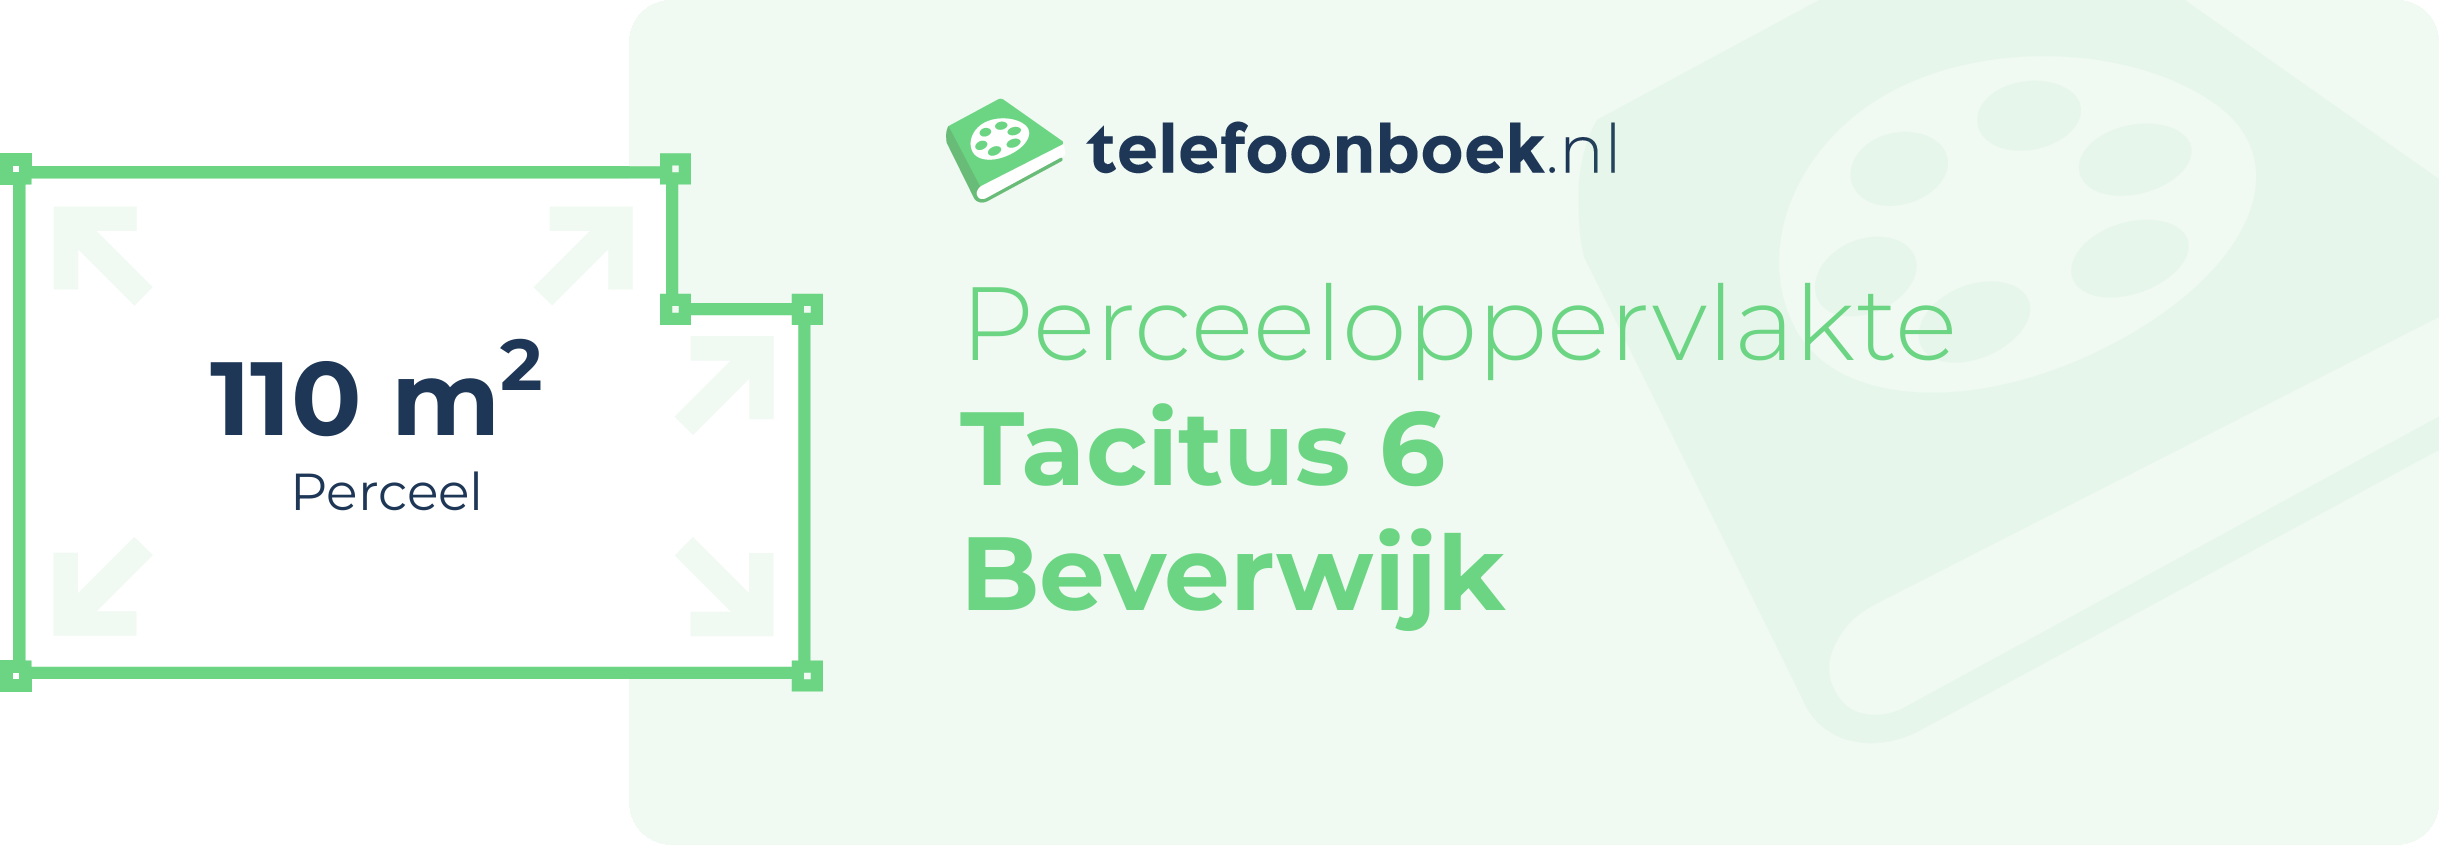 Perceeloppervlakte Tacitus 6 Beverwijk